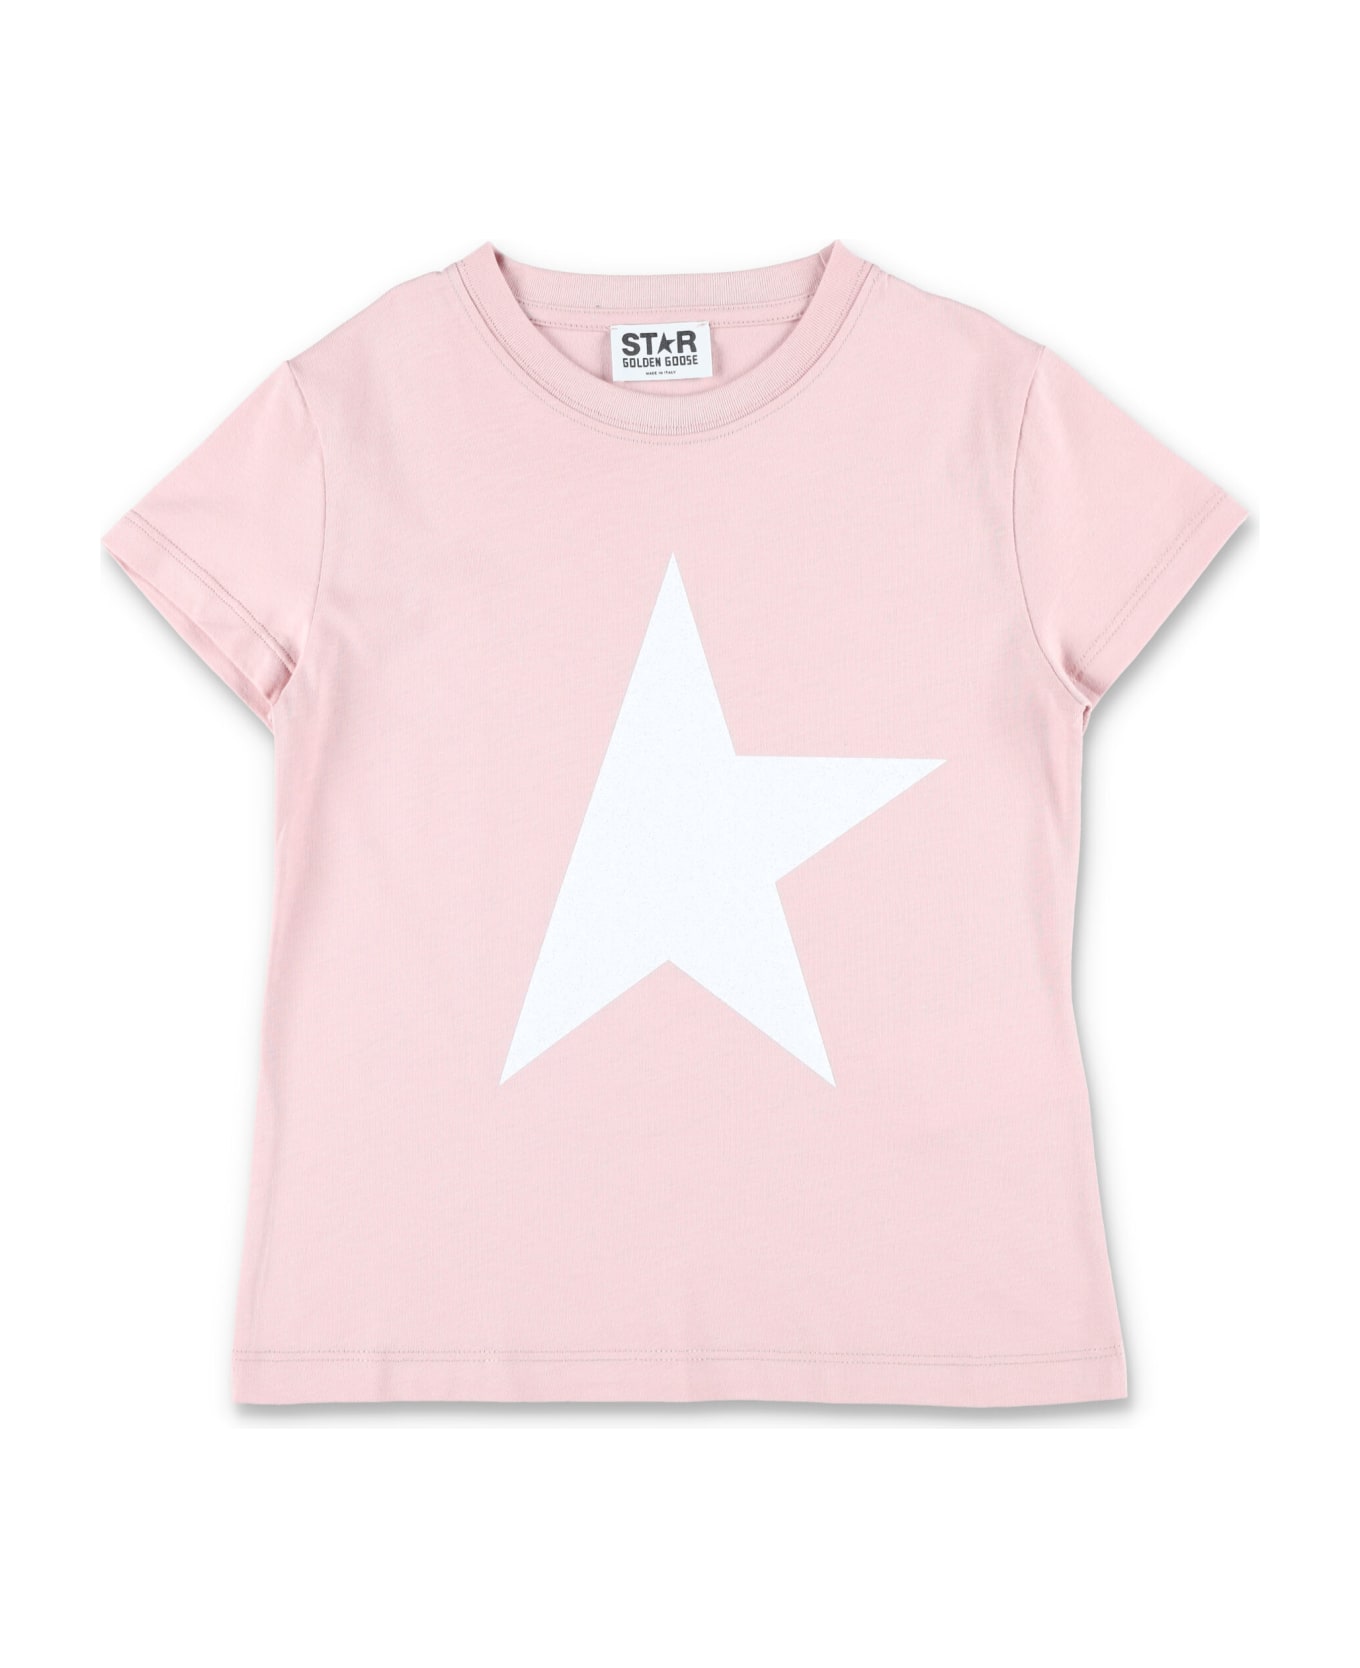 Golden Goose Glitter Star T-shirt - PINK/WHITE